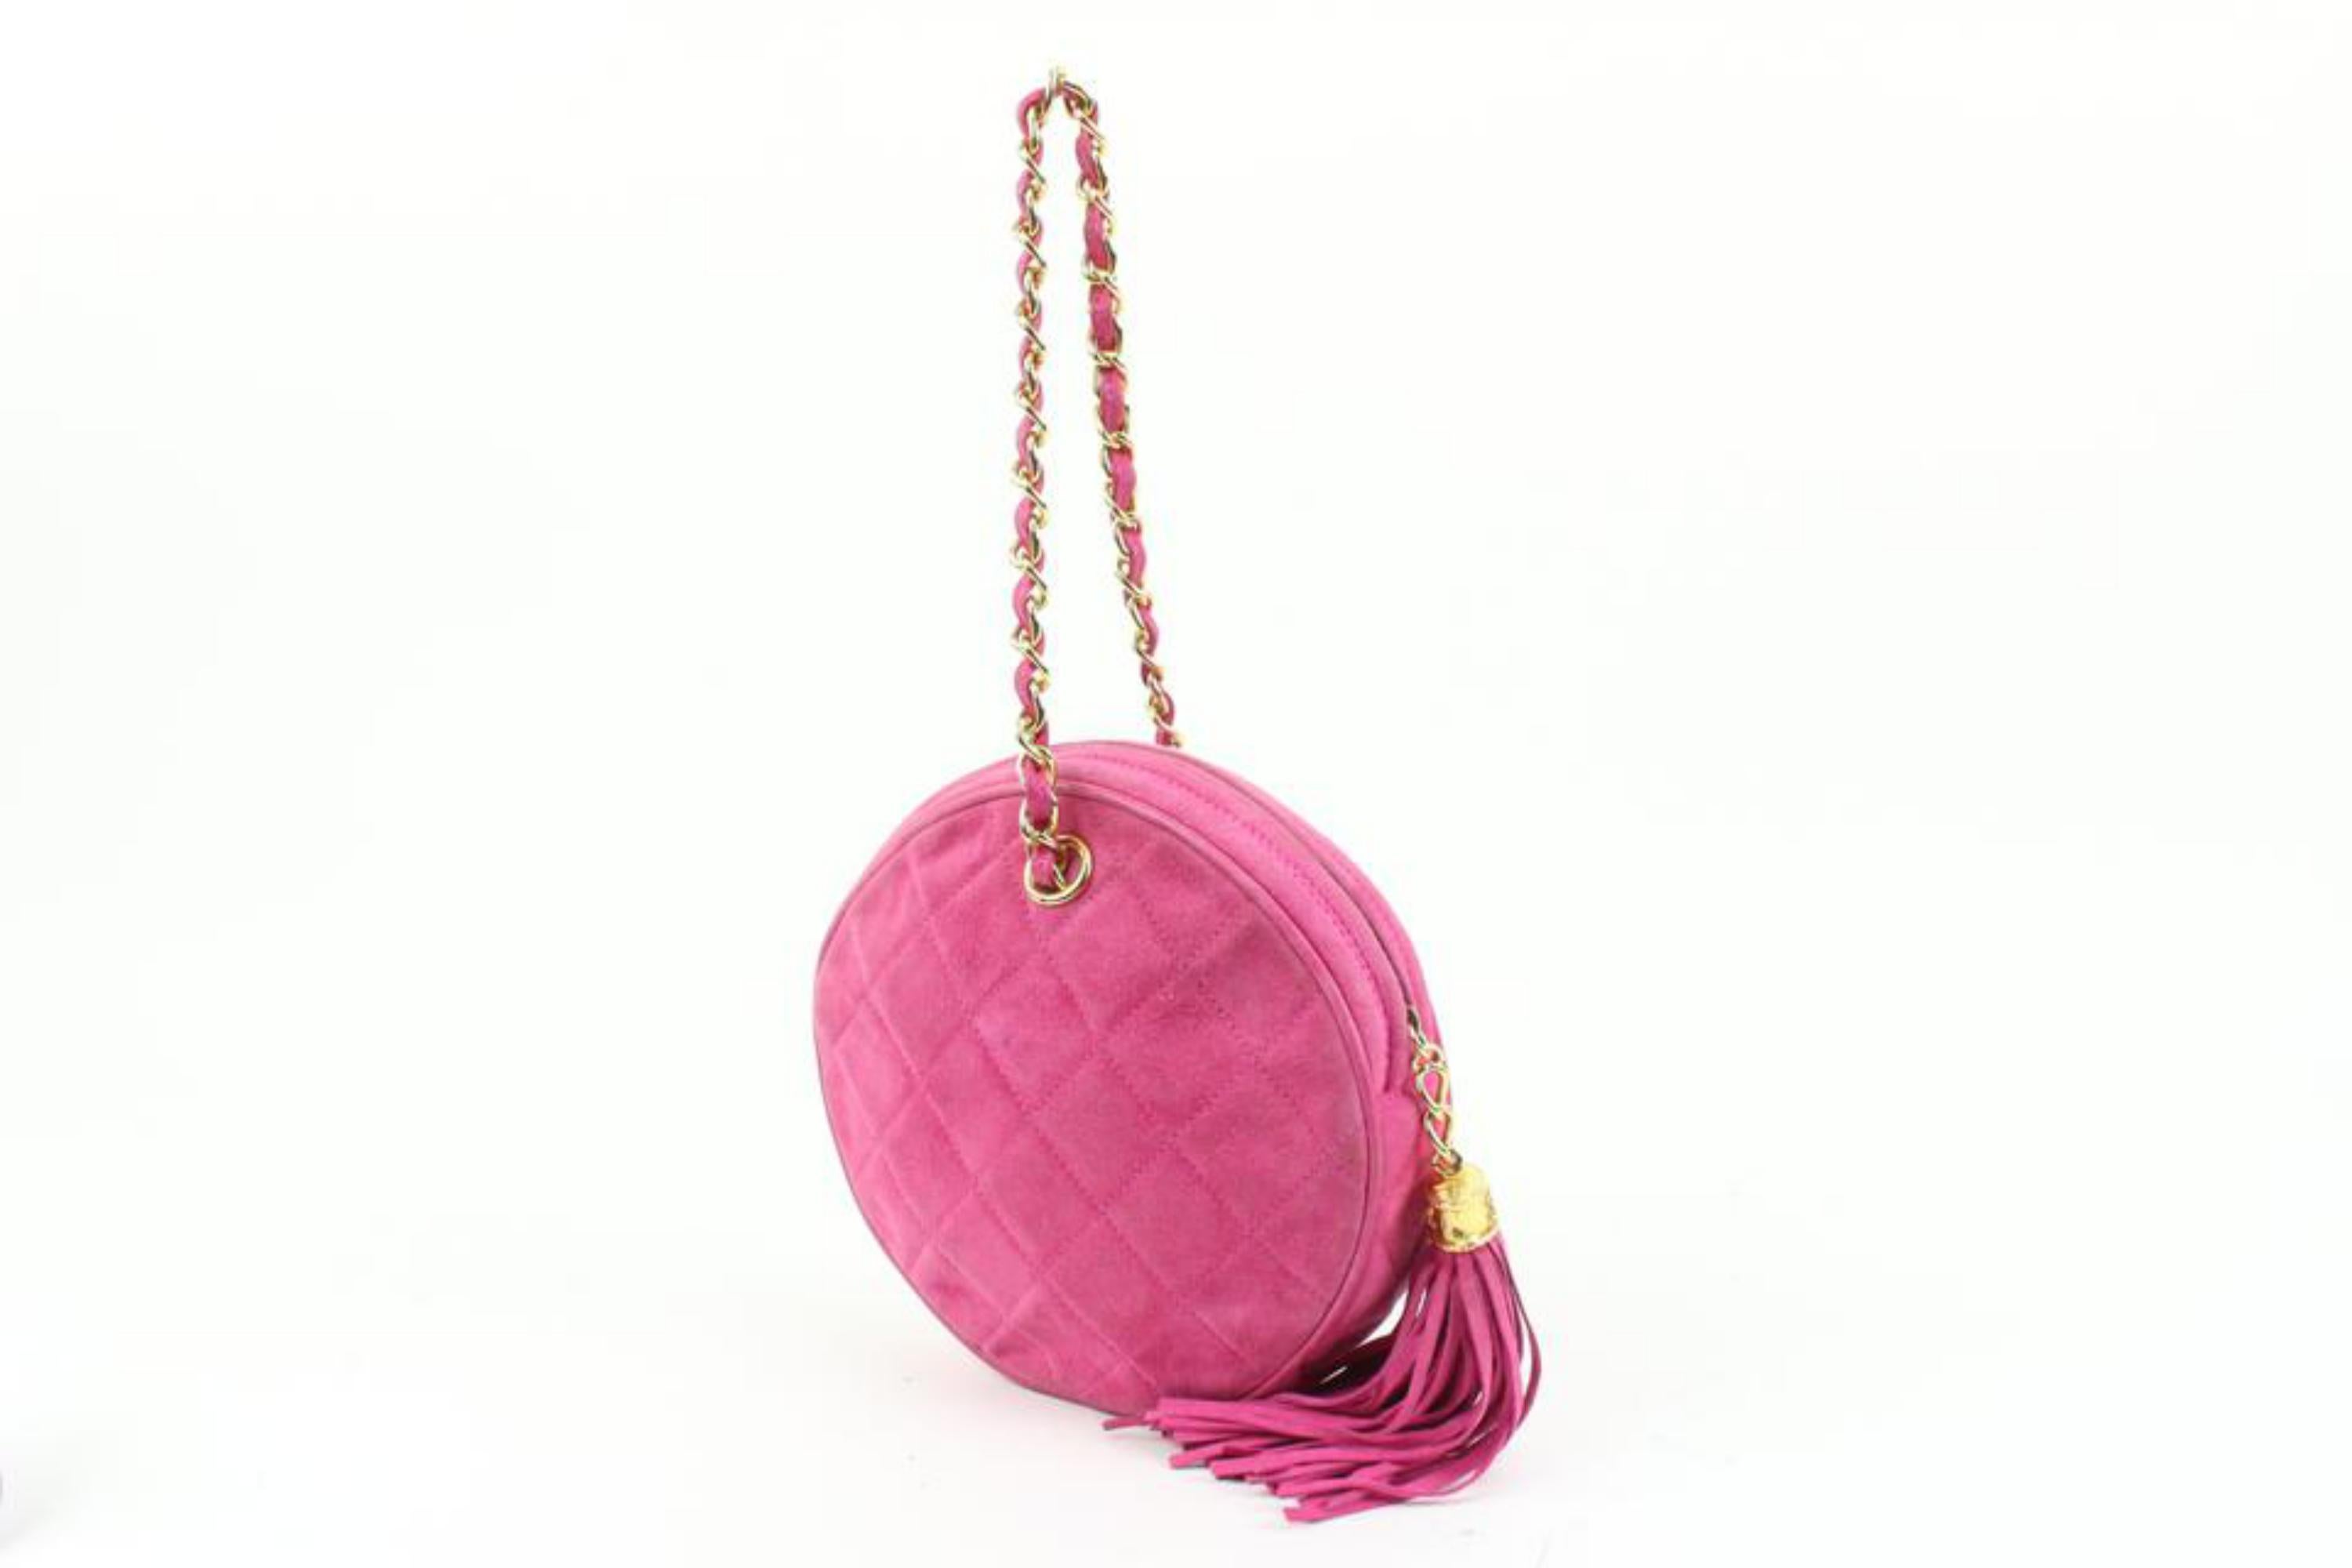 Chanel Hot Pink Quilted Suede Fringe Tassel Round Clutch on Chain 88cz425s
Code de date/Numéro de série : 0888891
Fabriqué en : Italie
Mesures : Longueur :  6.2